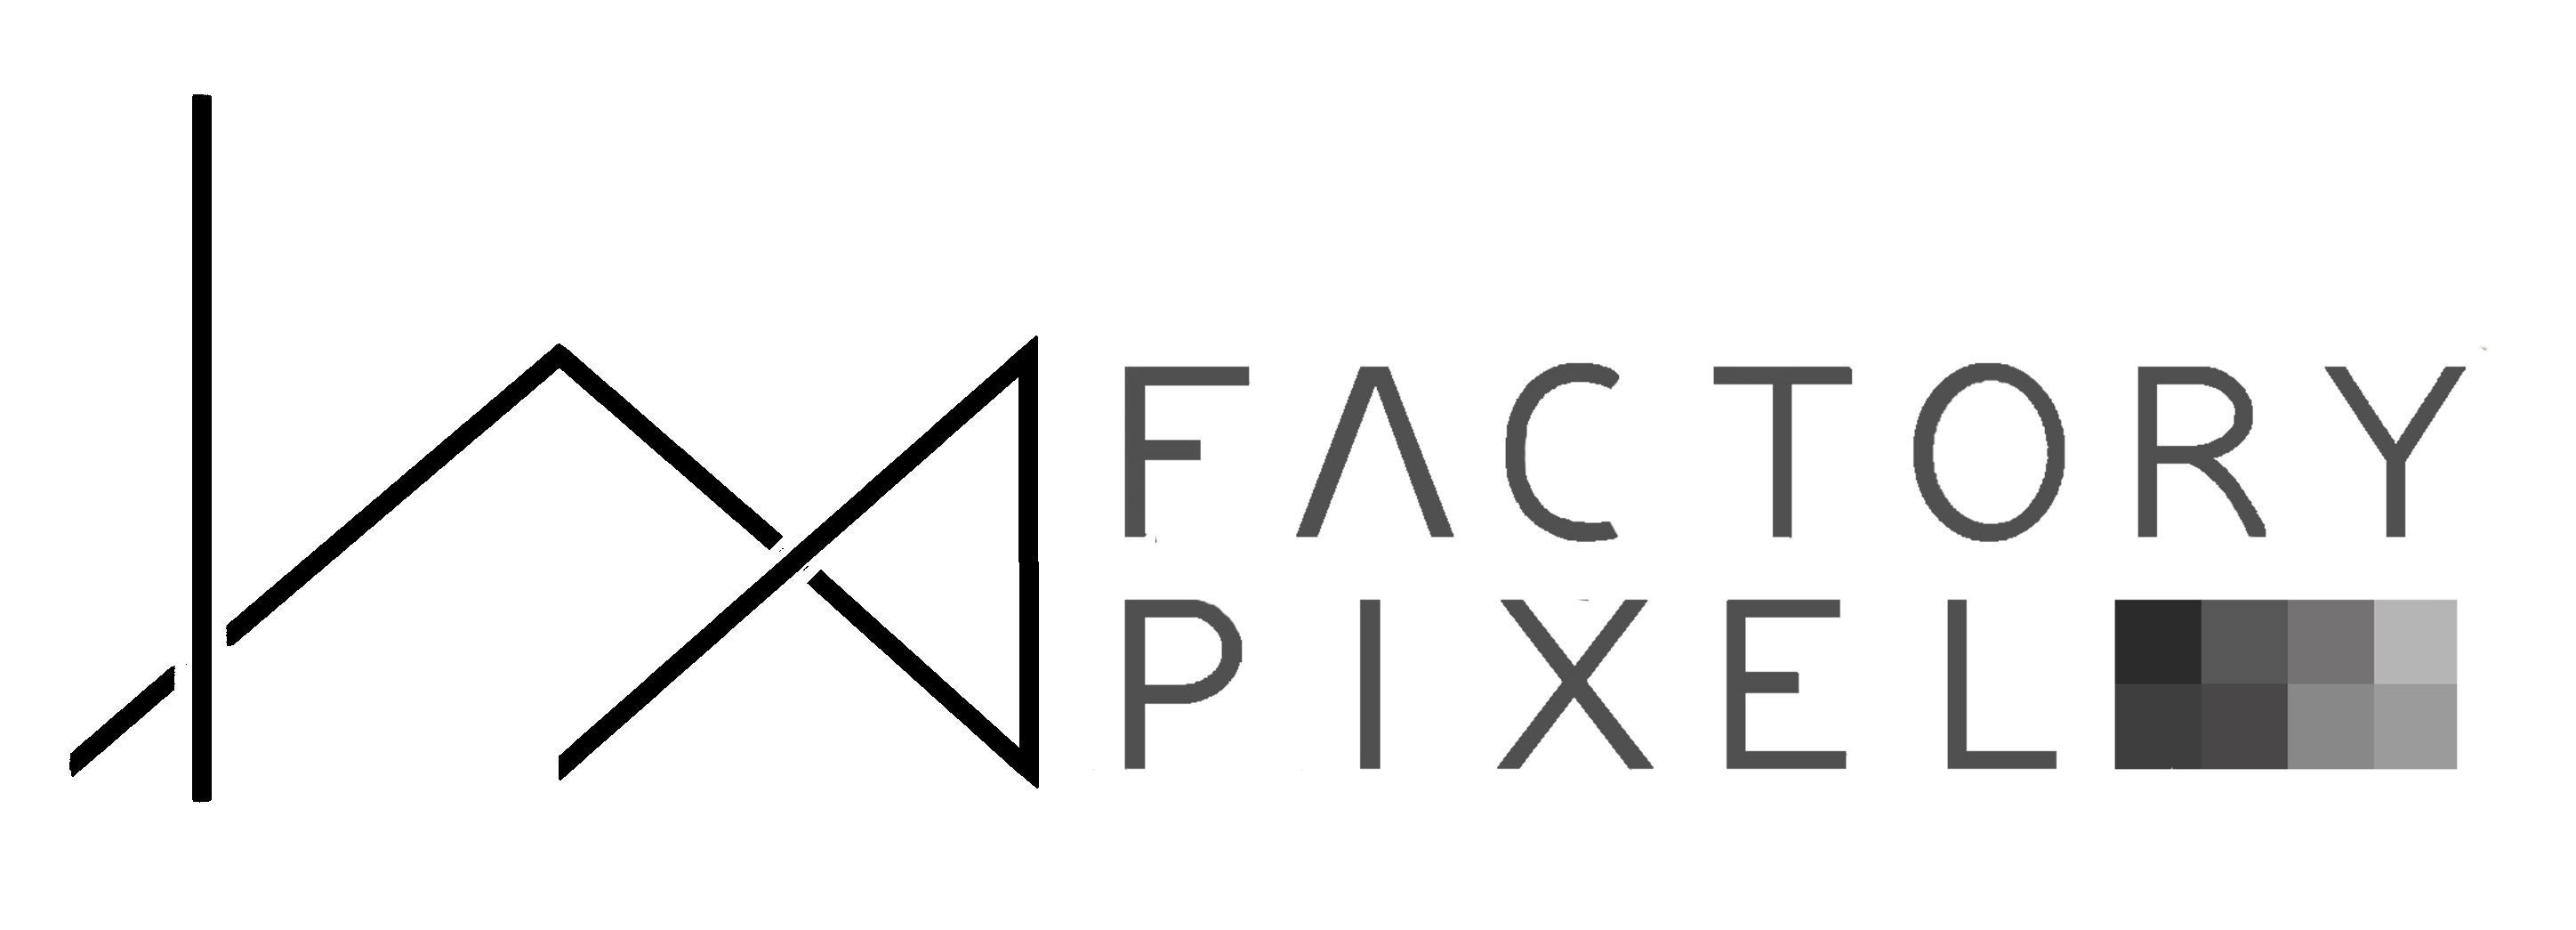 FACTORY PIXEL